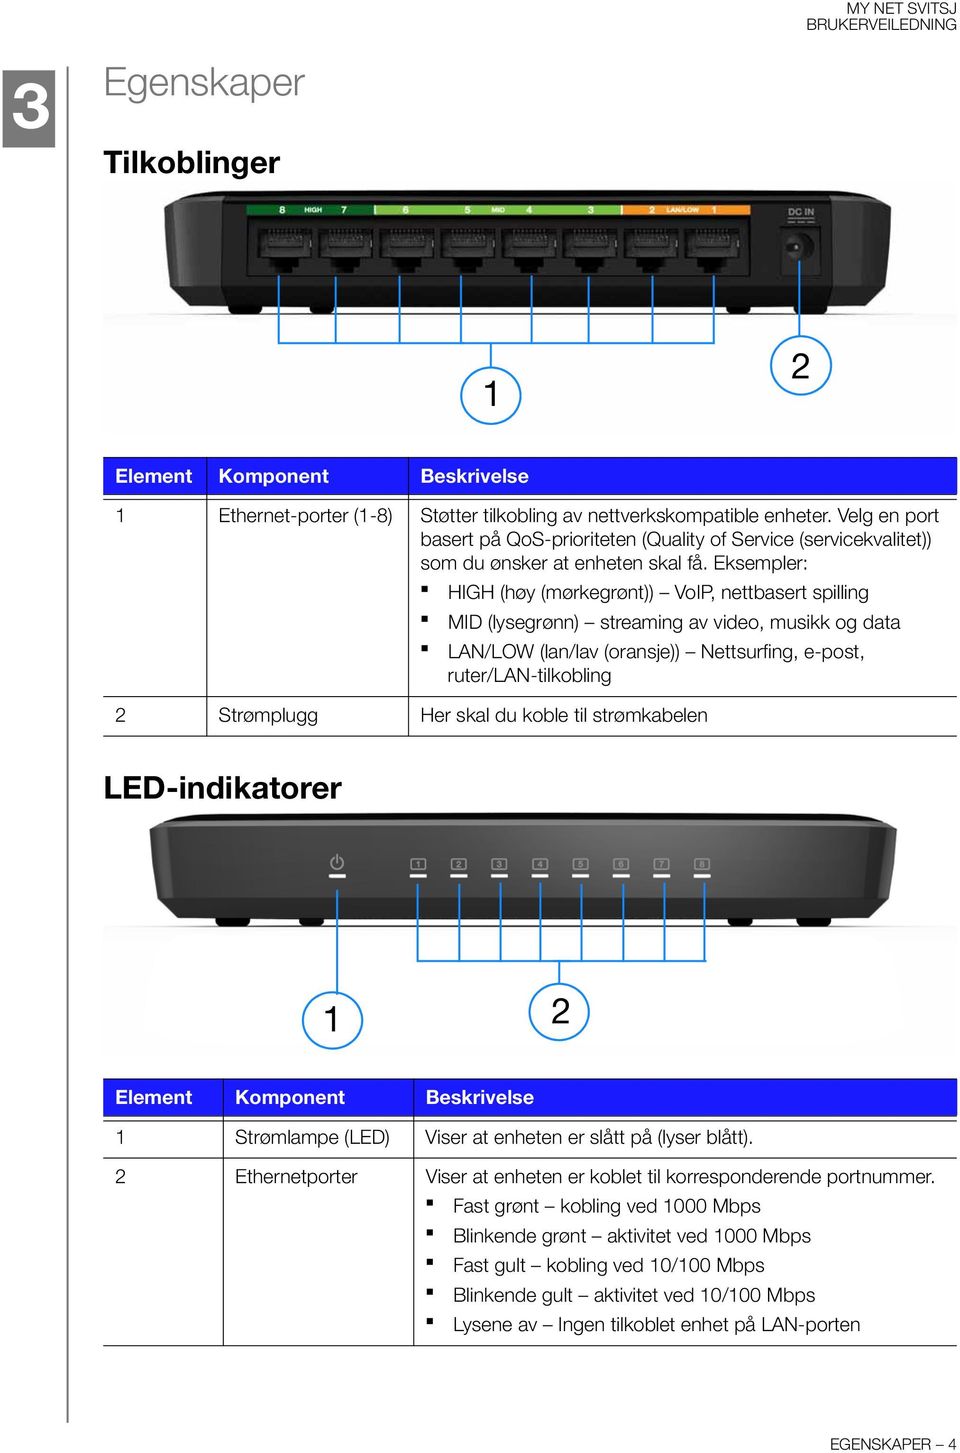 Eksempler: HIGH (høy (mørkegrønt)) VoIP, nettbasert spilling MID (lysegrønn) streaming av video, musikk og data LAN/LOW (lan/lav (oransje)) Nettsurfing, e-post, ruter/lan-tilkobling 2 Strømplugg Her